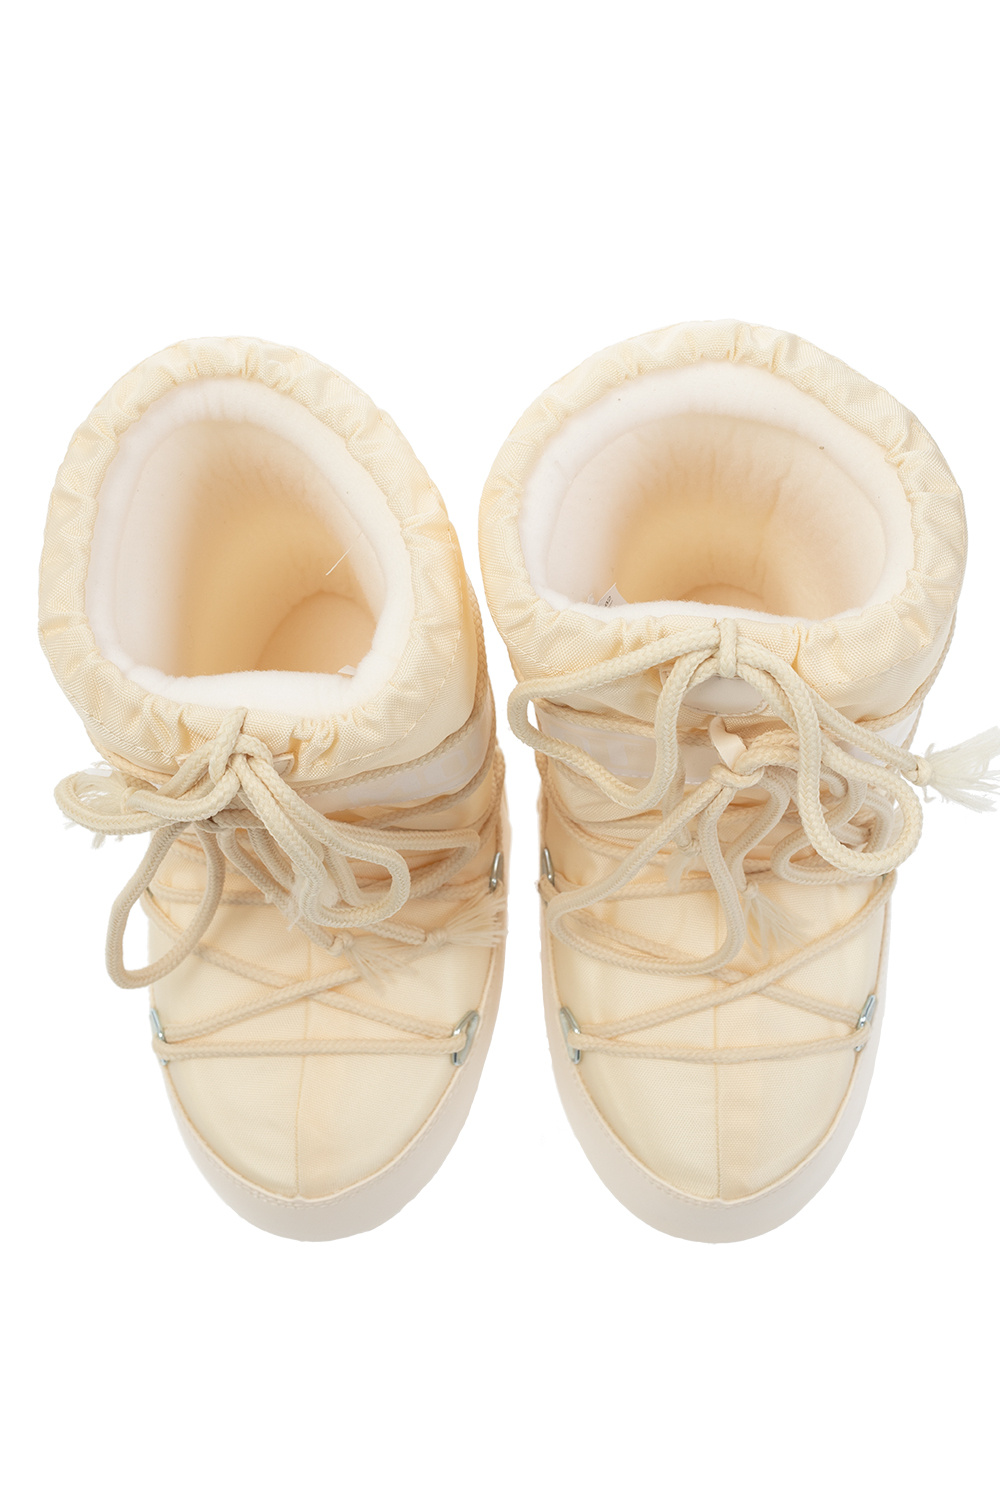 Le sneaker sono dotati di uninnovativa unità Air ‘Nylon’ snow boots